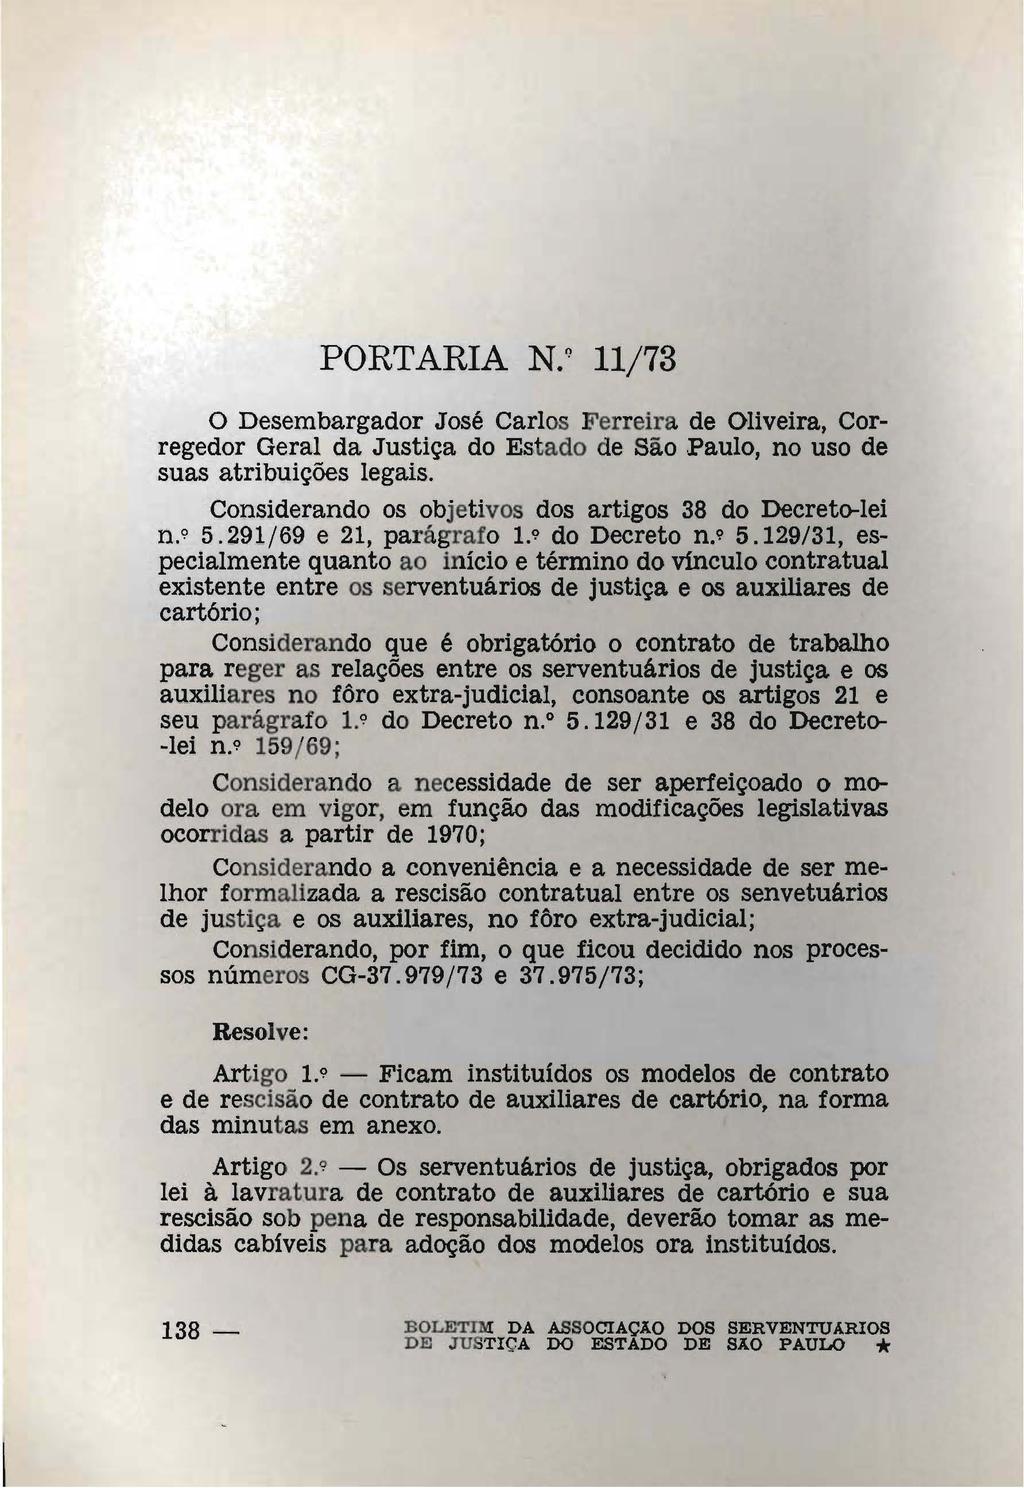 PORTARIA N.~ 11/73 o Desembargador José Carlos Ferreira de Oliveira, Corregedor Geral da Justiça do Estado de São Paulo, no uso de suas atribuições legais.